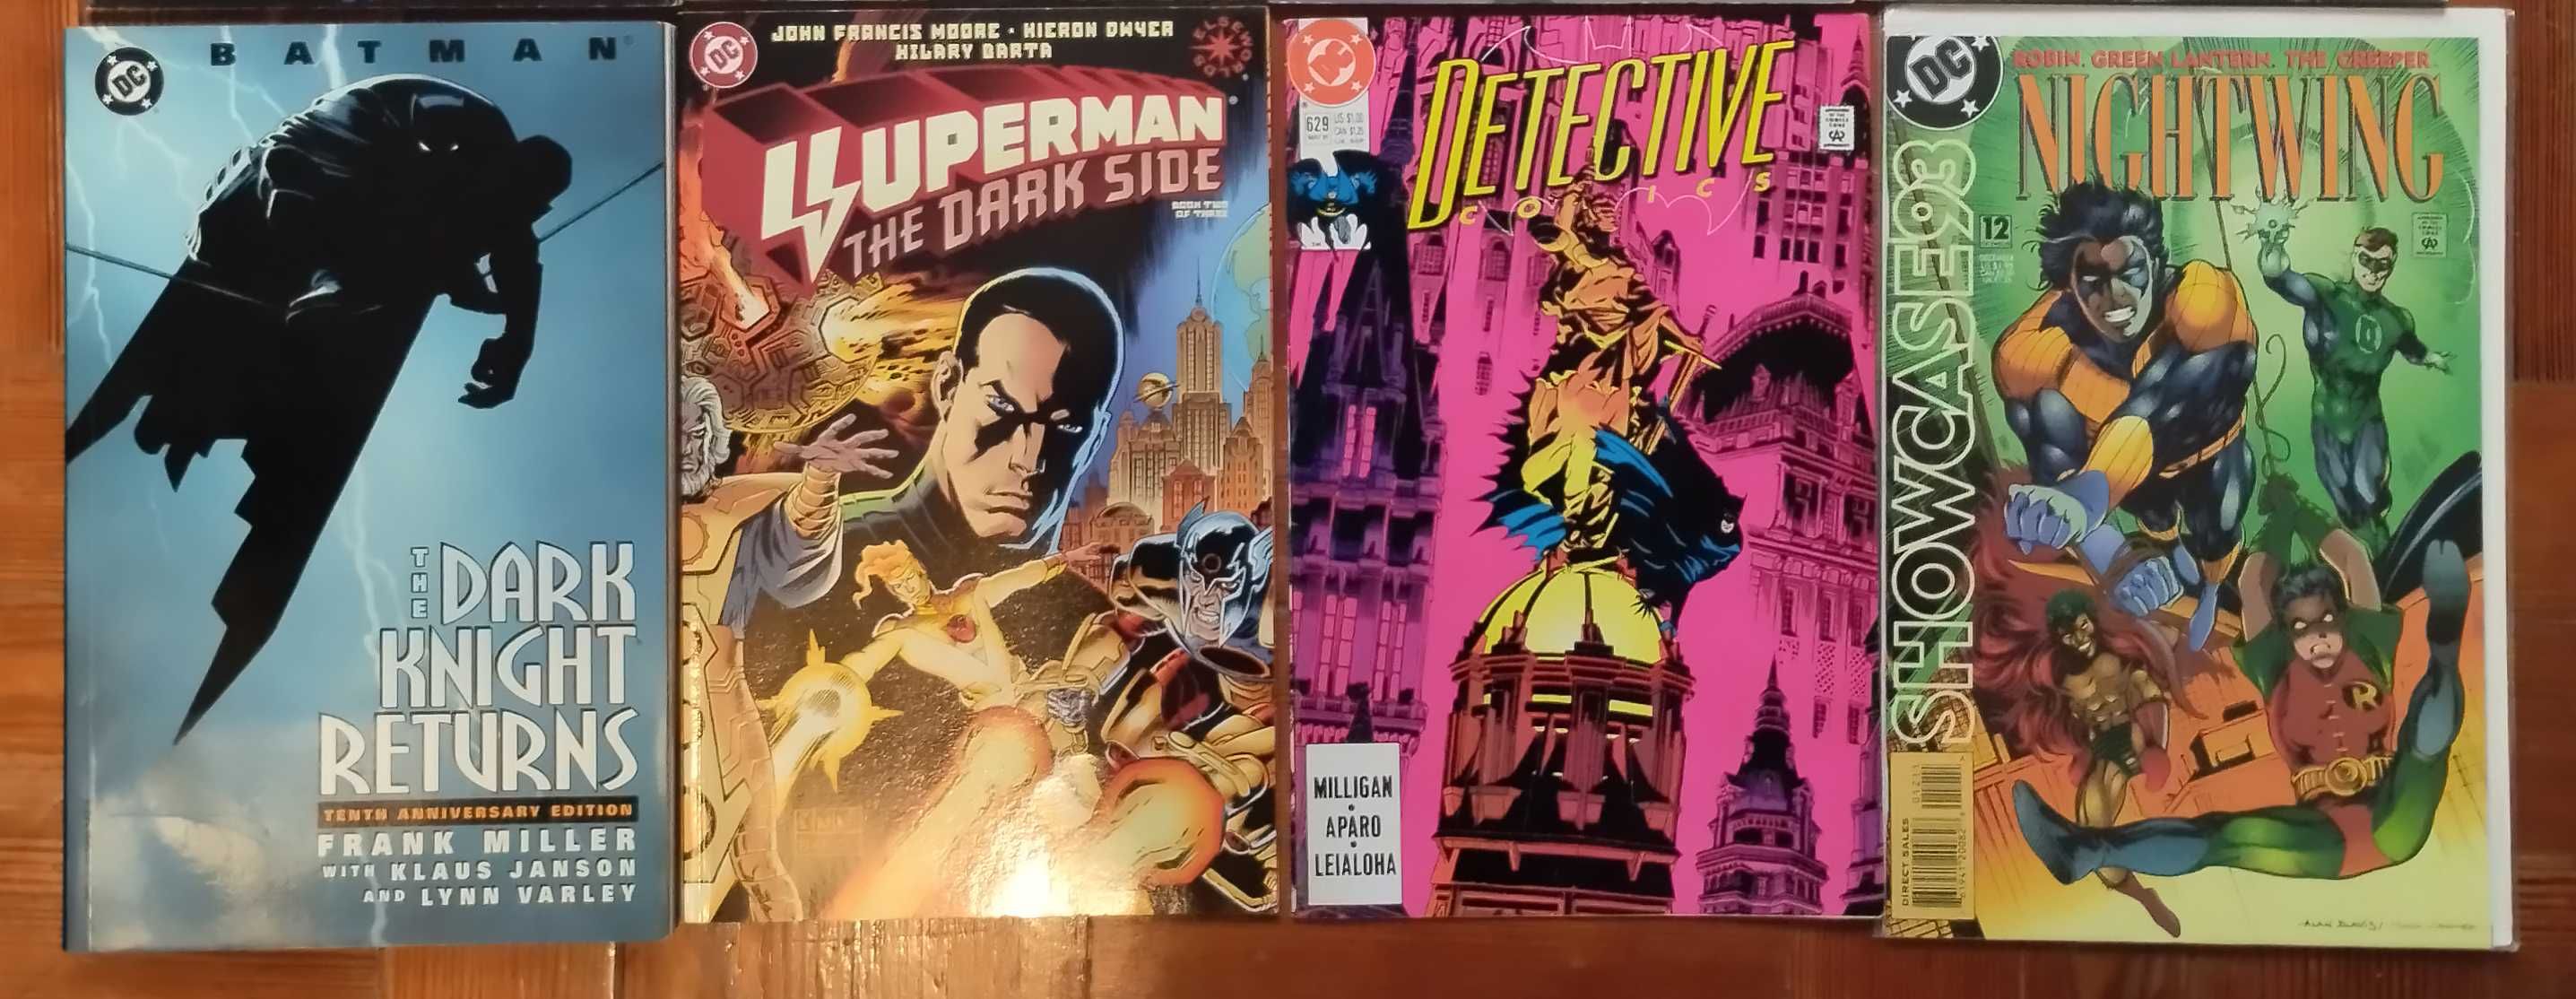 Biblioteca DC Comics / Vertigo / Batman / Superman Graphic Novels